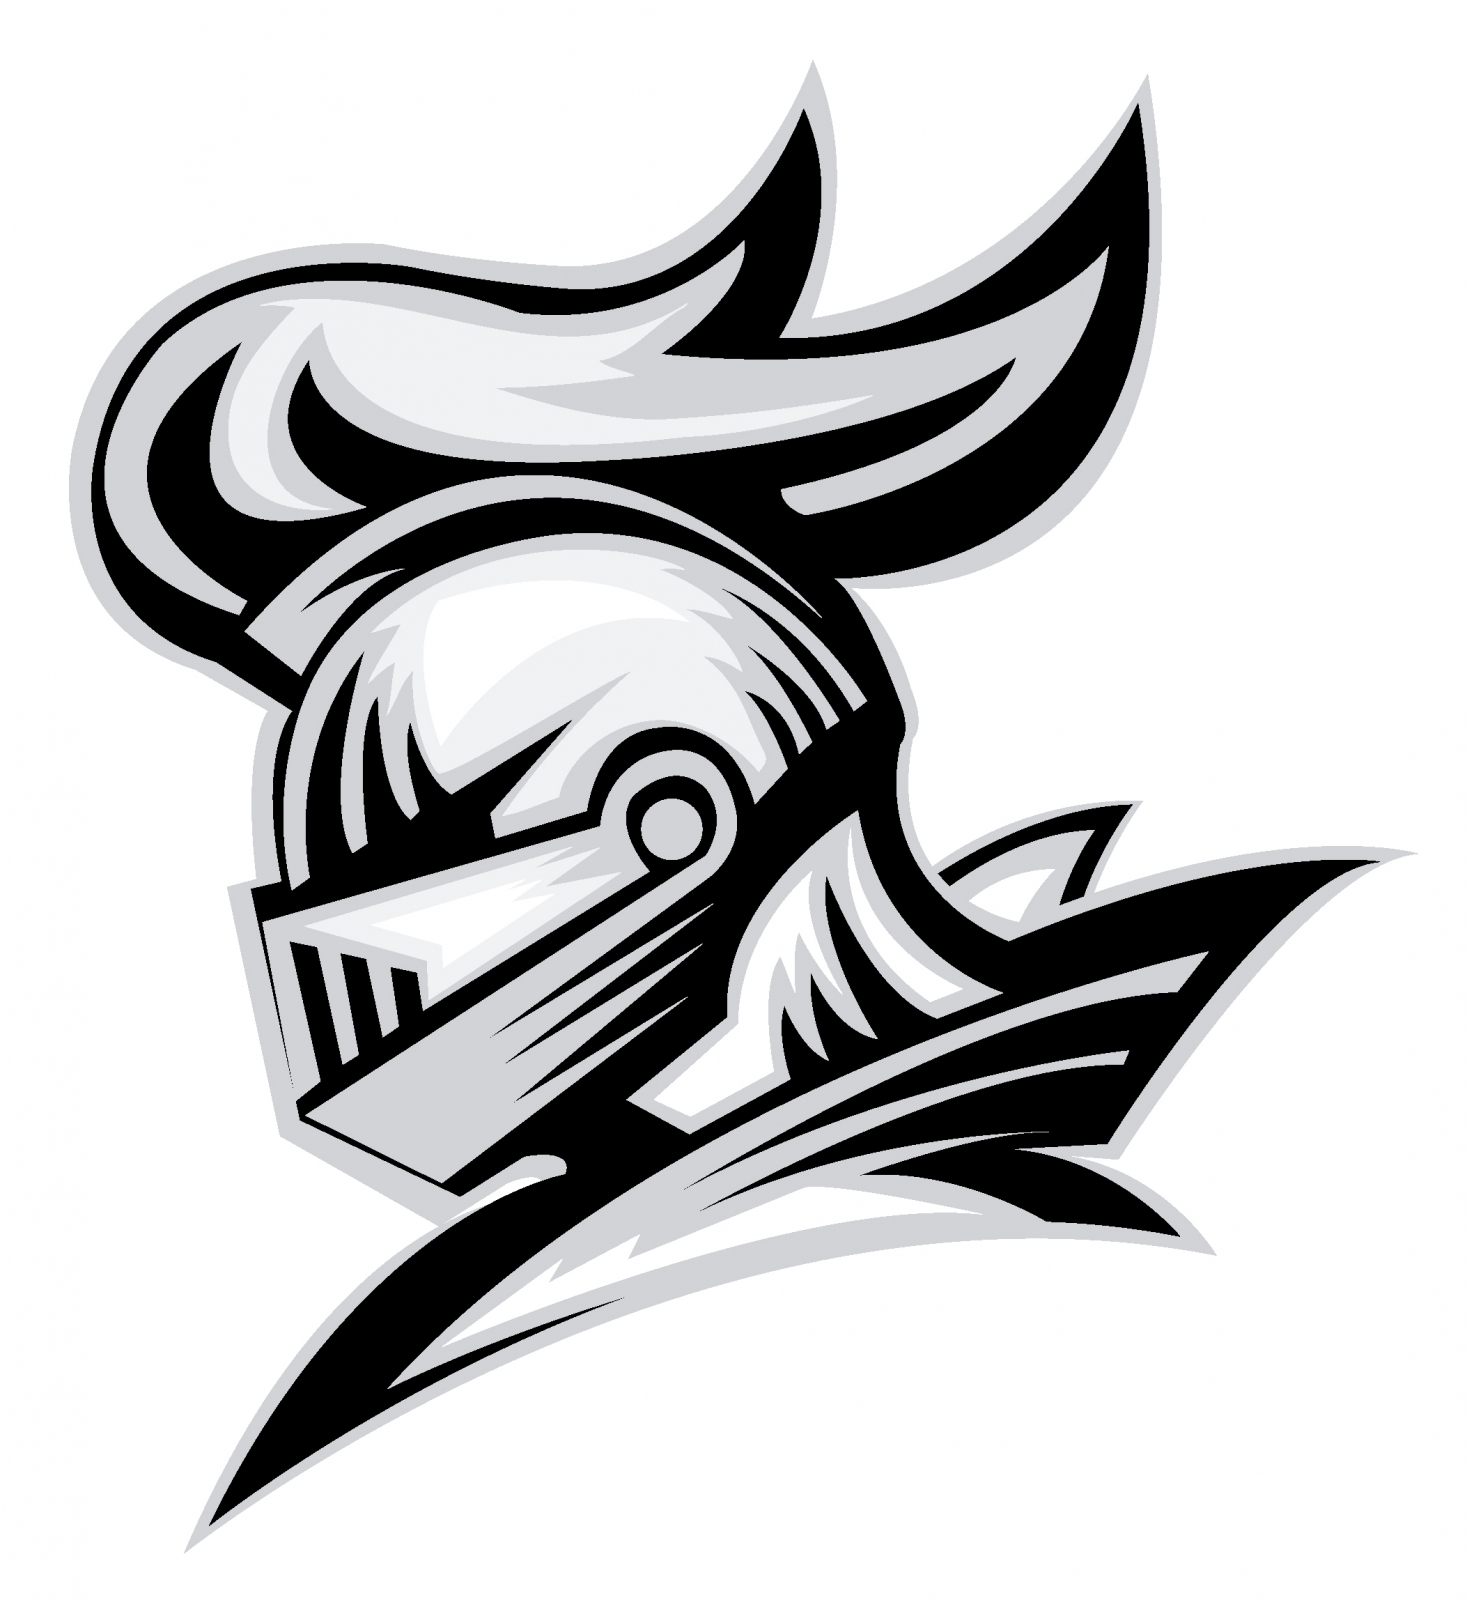 letran knights logo